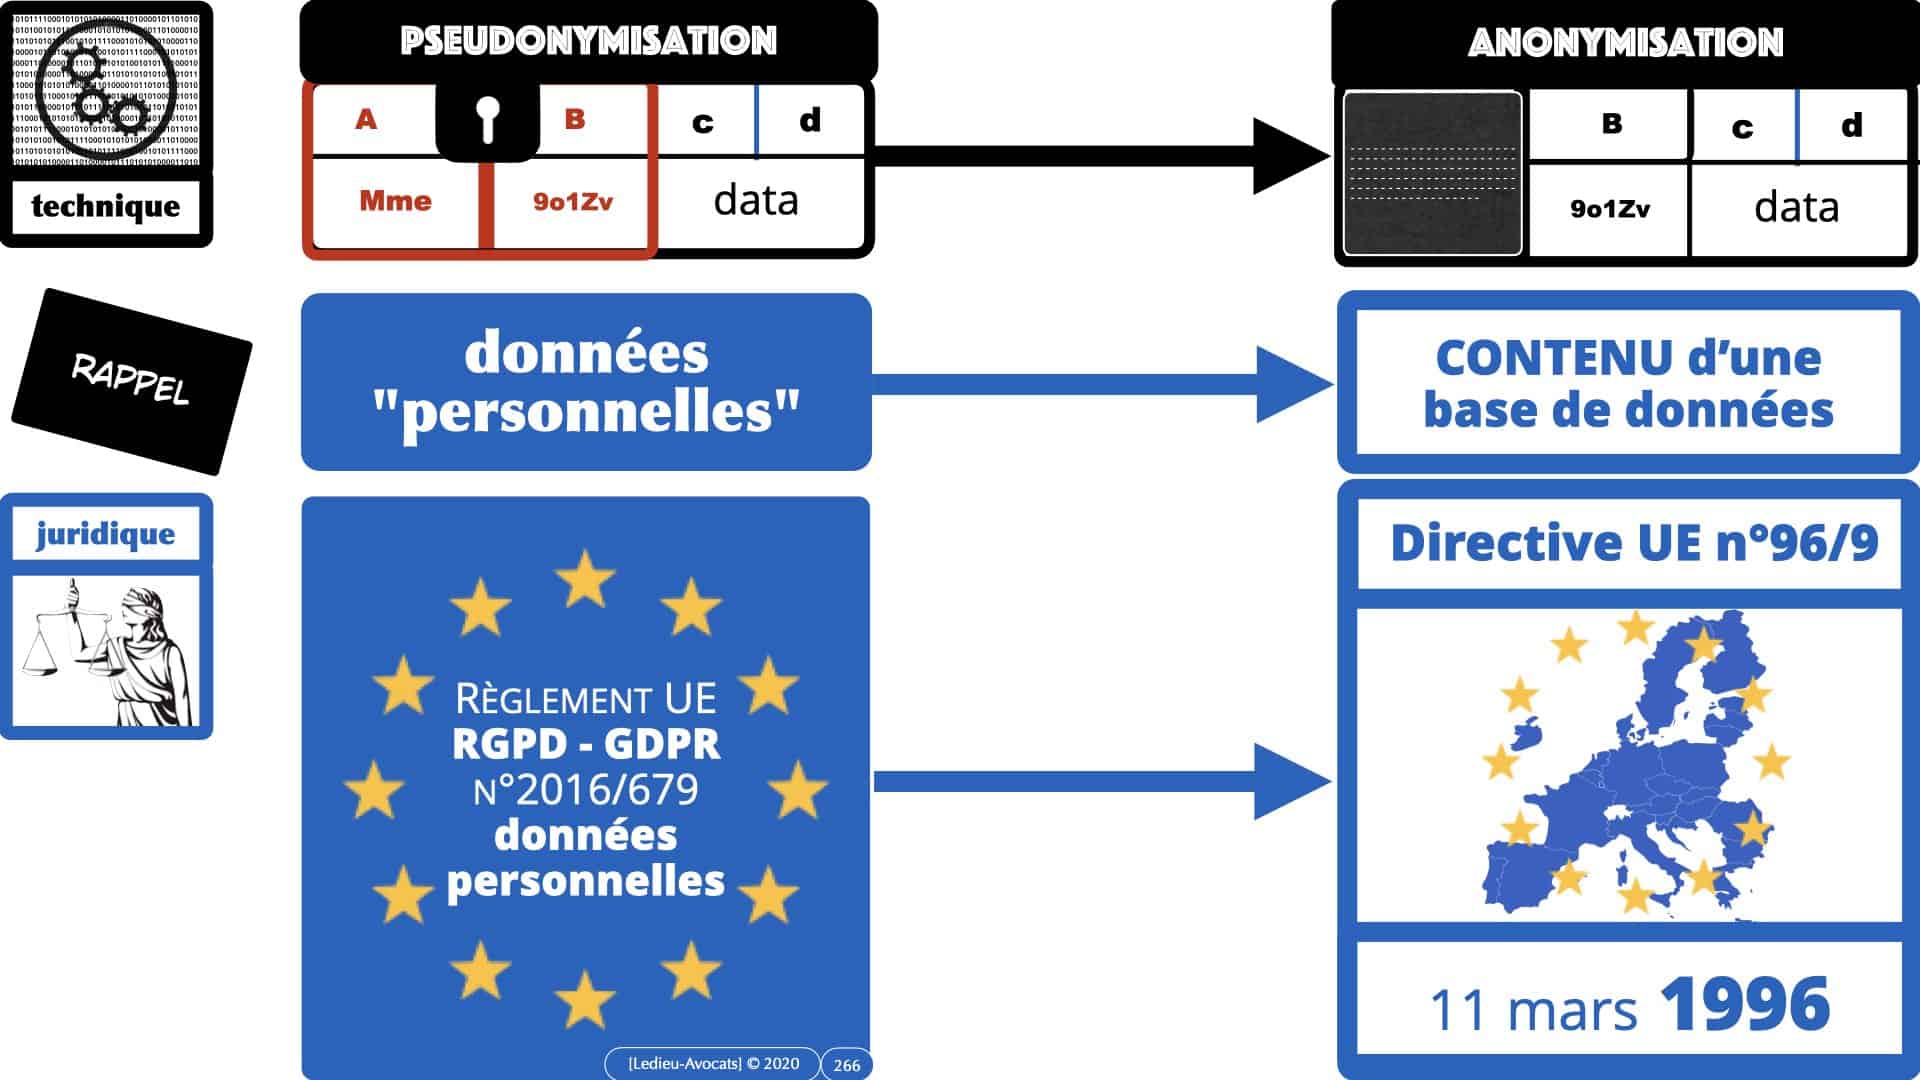 RGPD e-Privacy données personnelles jurisprudence formation Lamy Les Echos 10-02-2021 ©Ledieu-Avocats.266